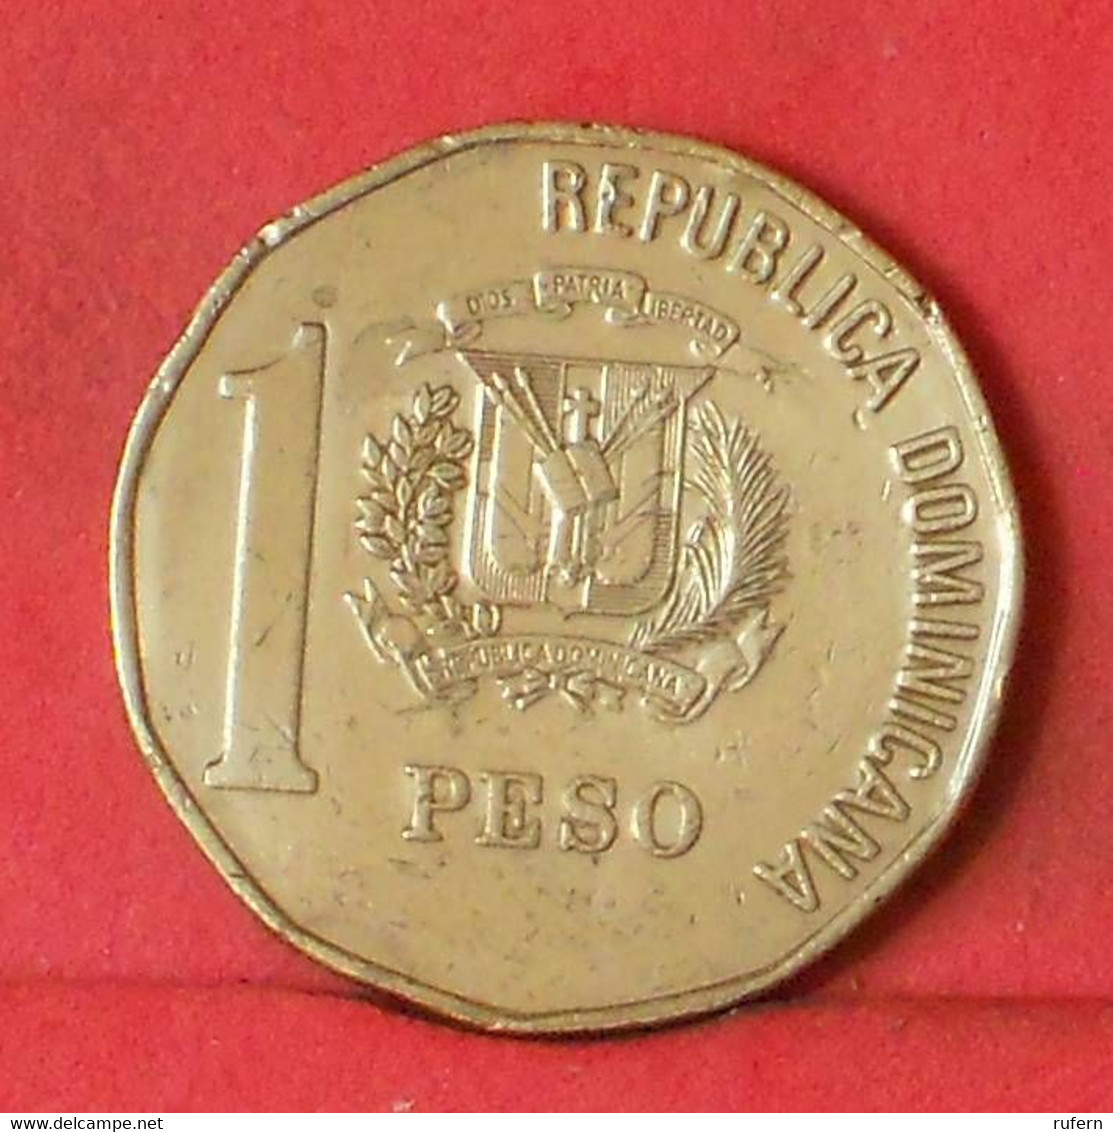 DOMINICANA 1 PESOS 1993 -    KM# 80,2 - (Nº38384) - Dominicana